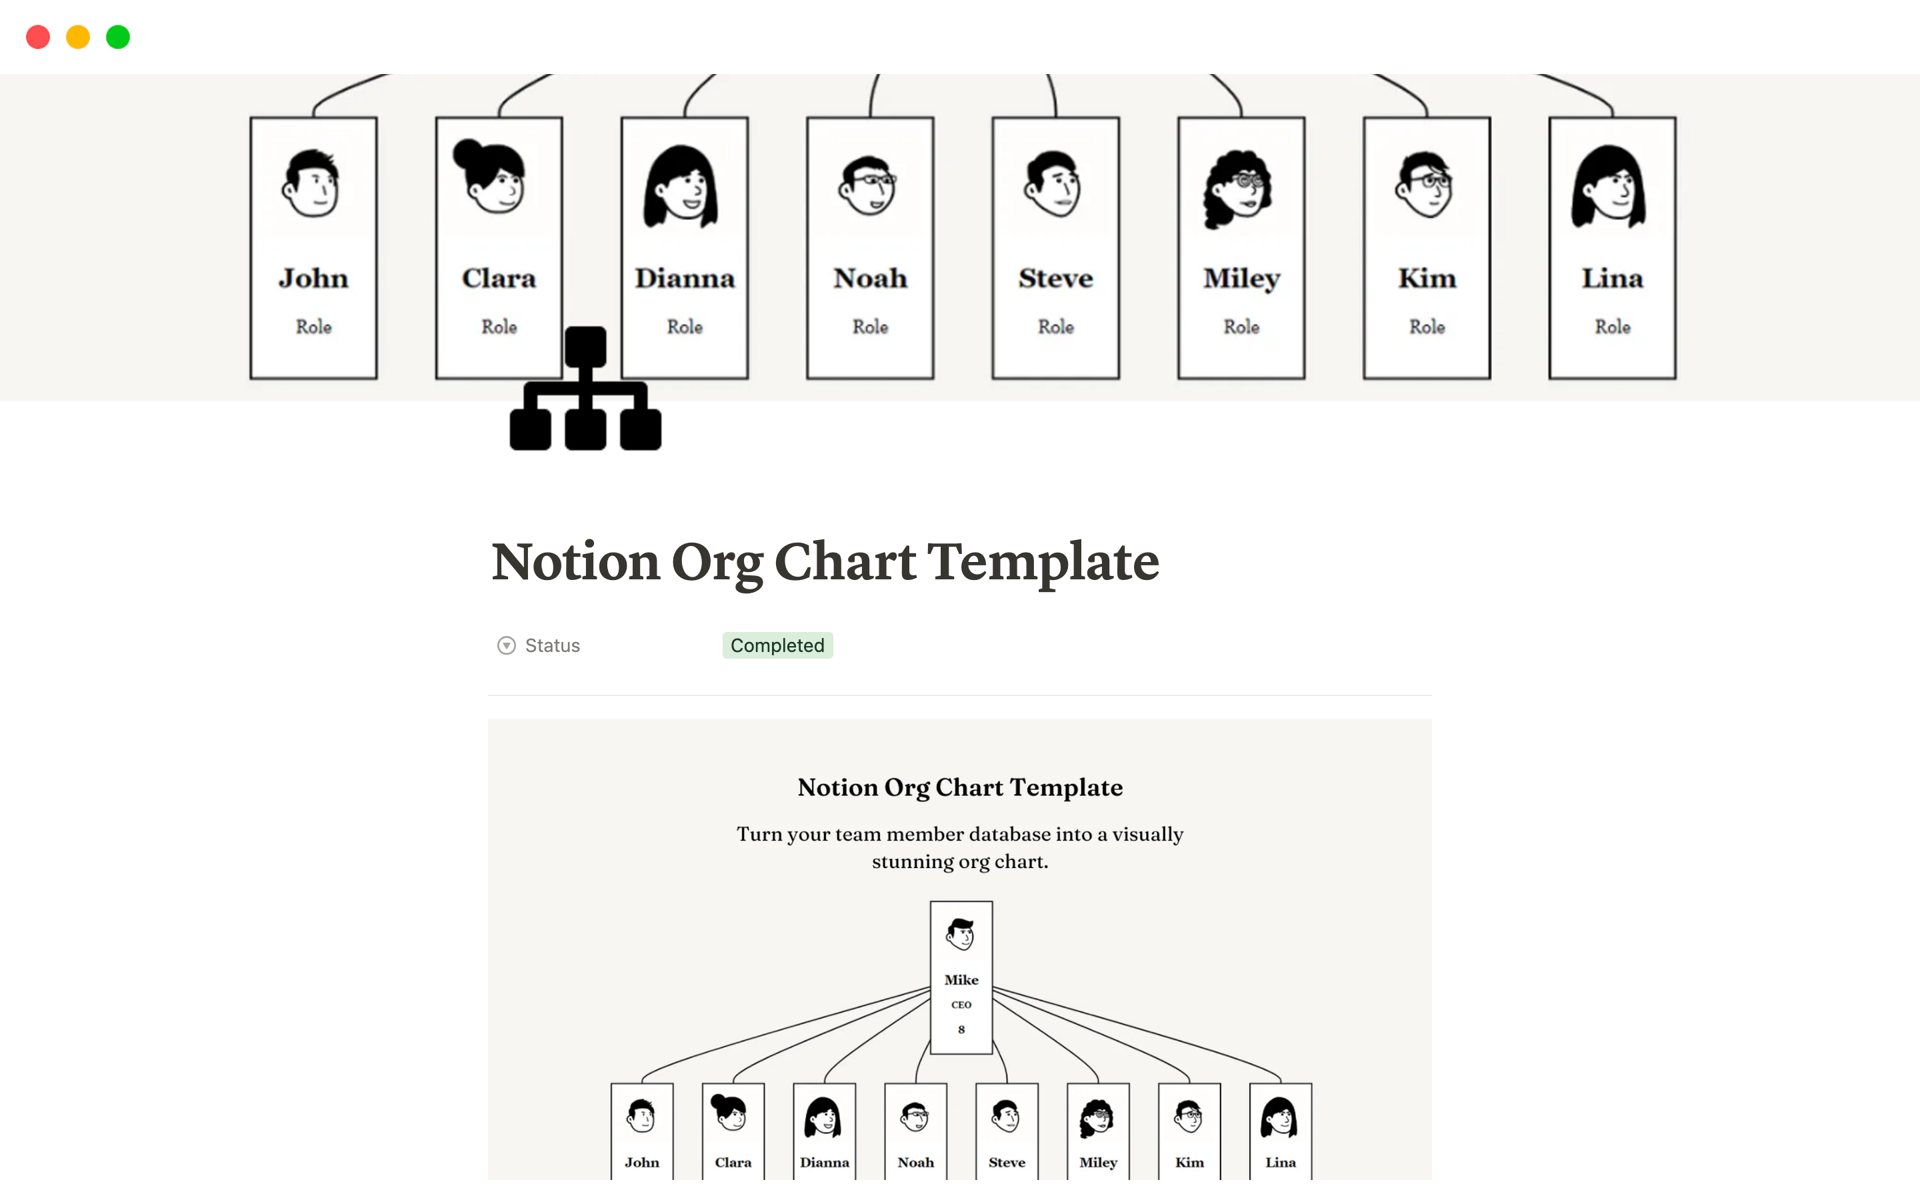 Uma prévia do modelo para Notion Org Chart Template